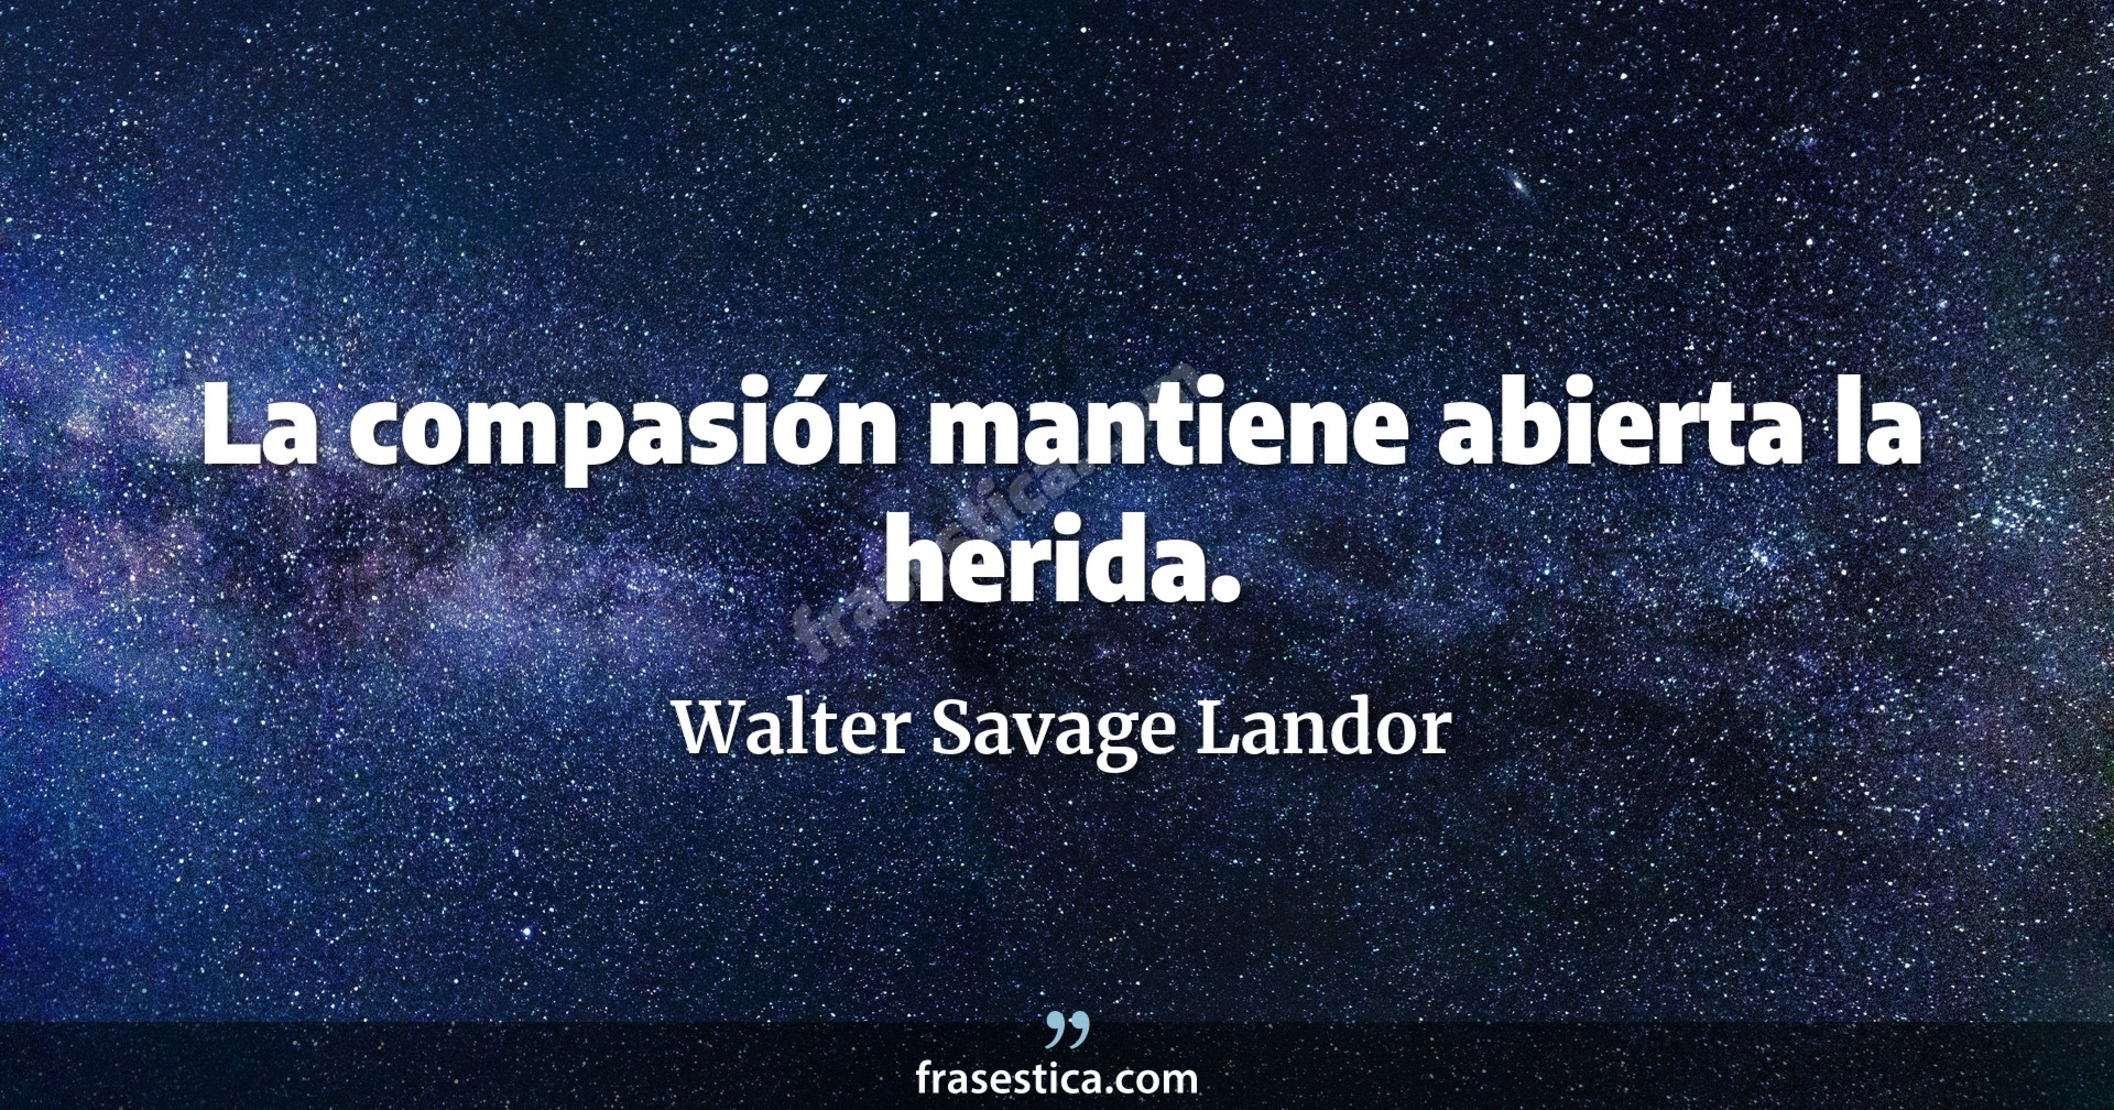 La compasión mantiene abierta la herida. - Walter Savage Landor